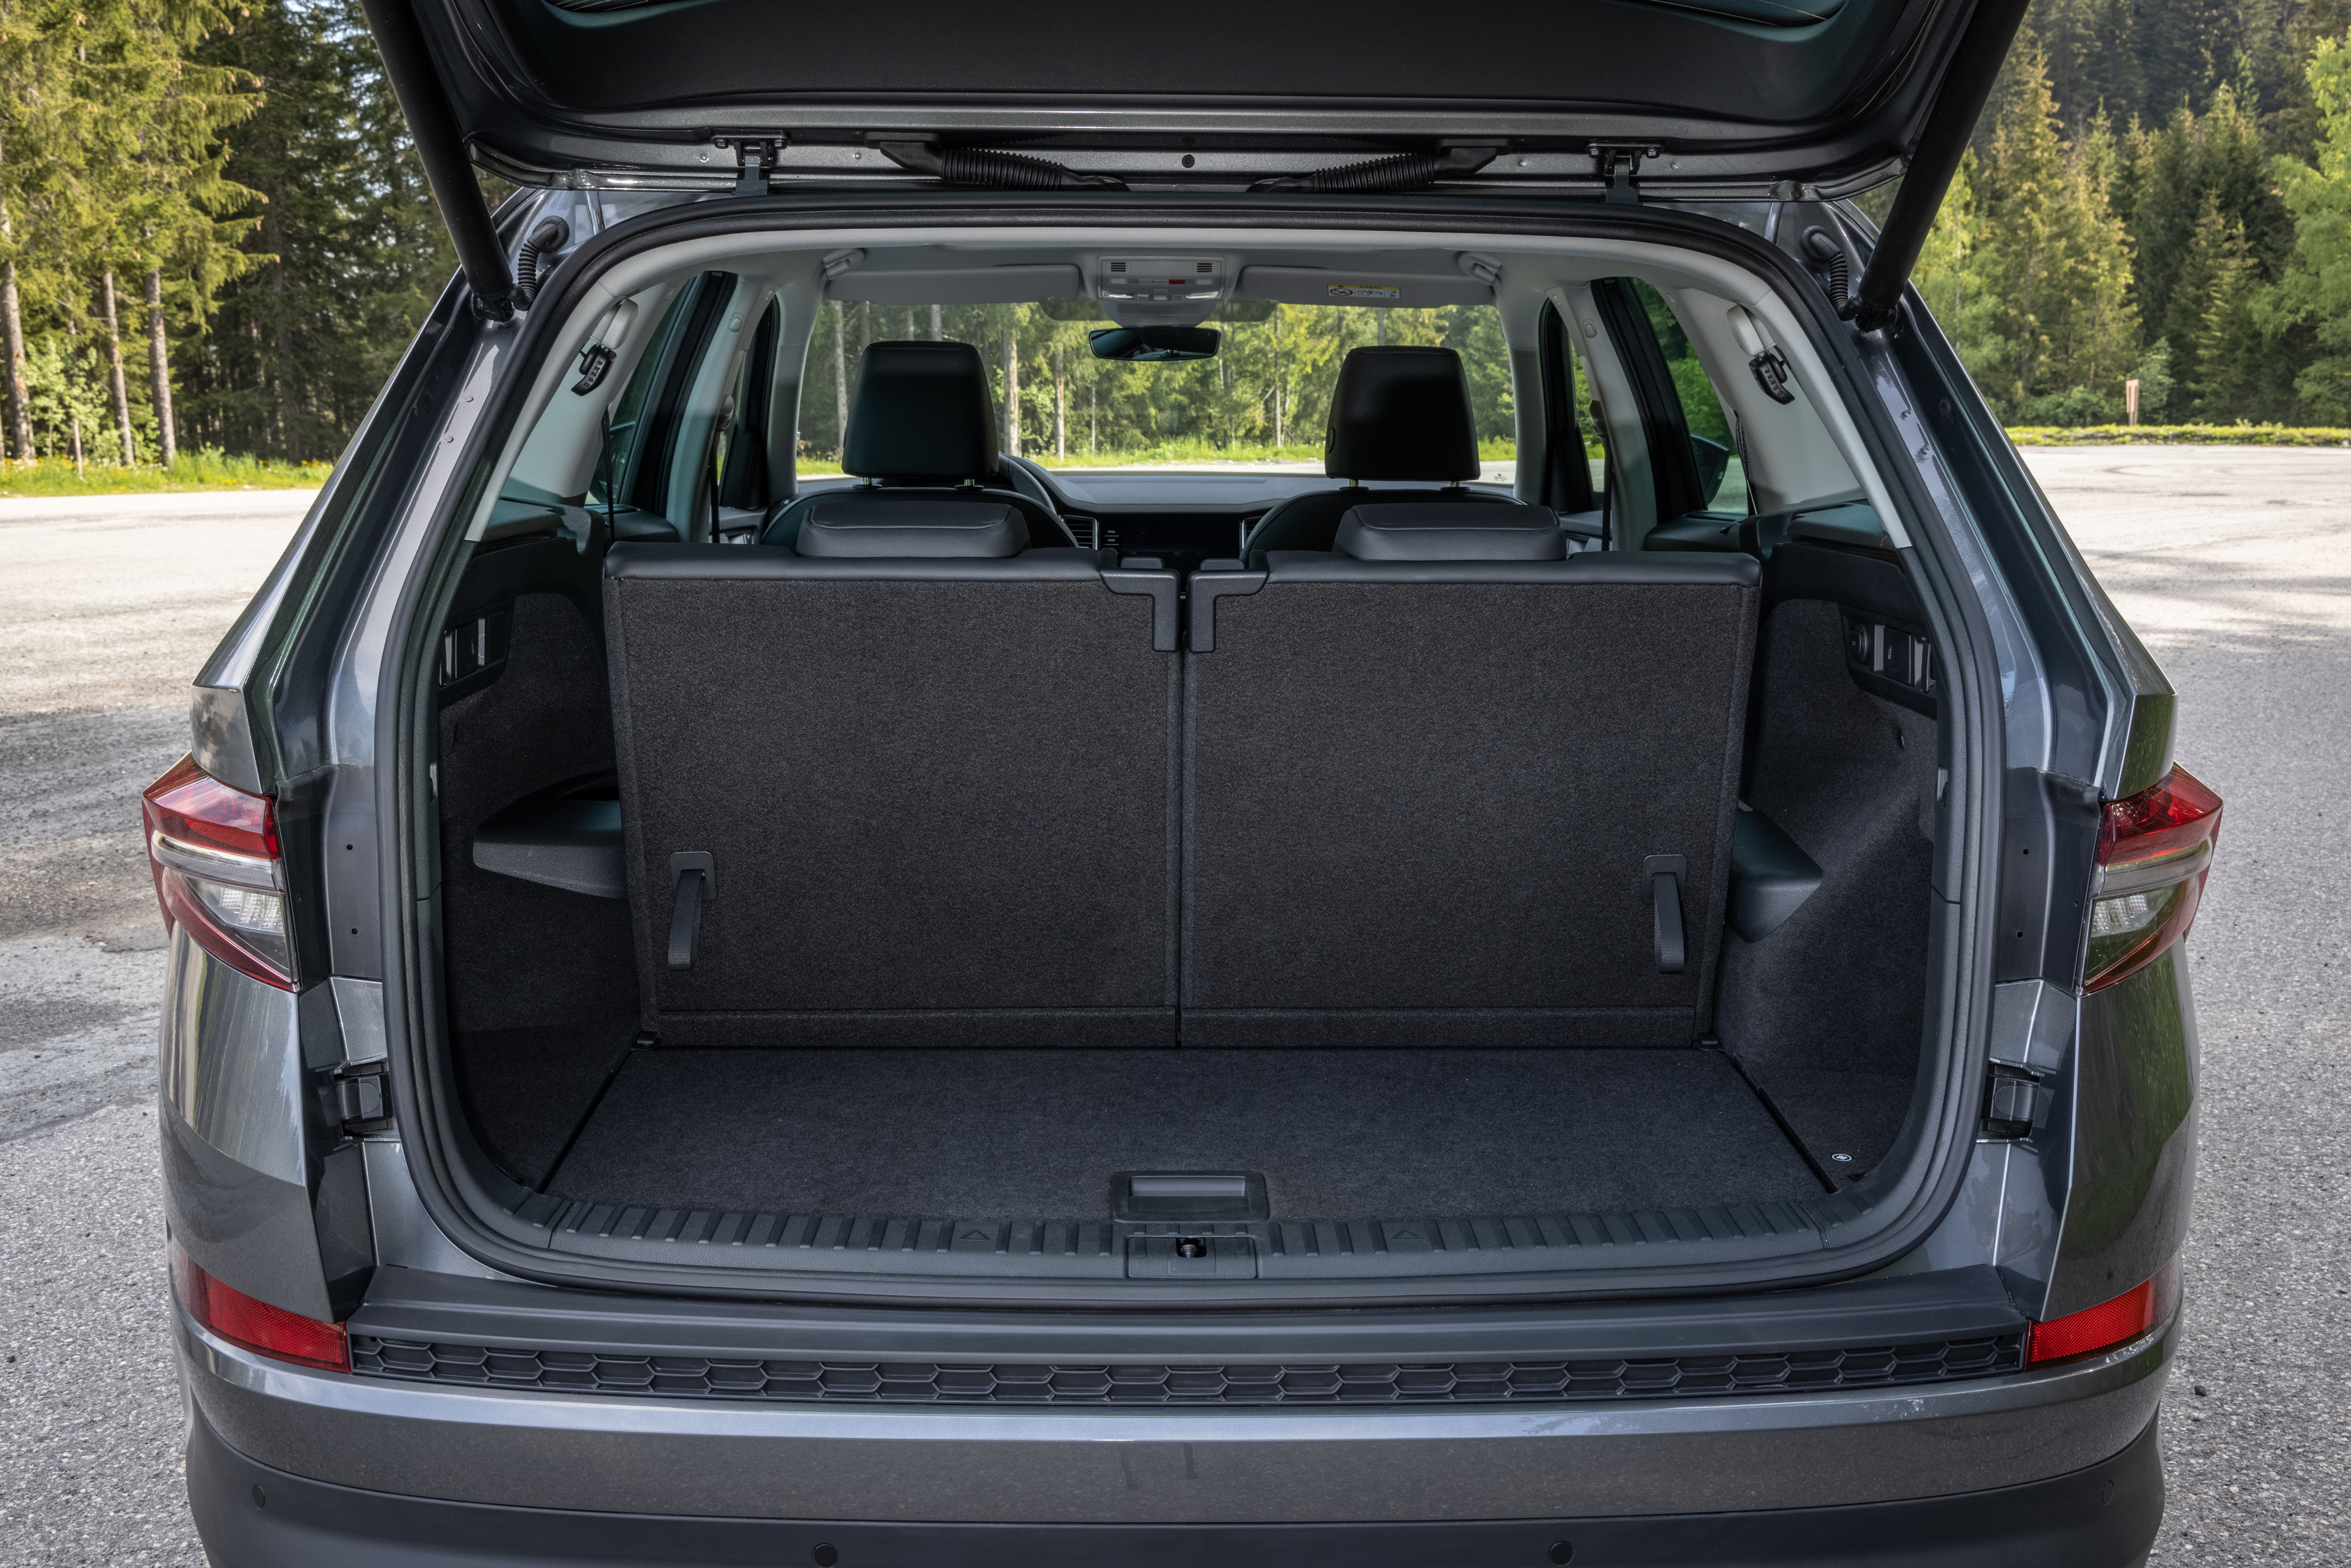 Tapis de coffre voiture pour Seat Kodiaq à partir de 2017 SUV 5